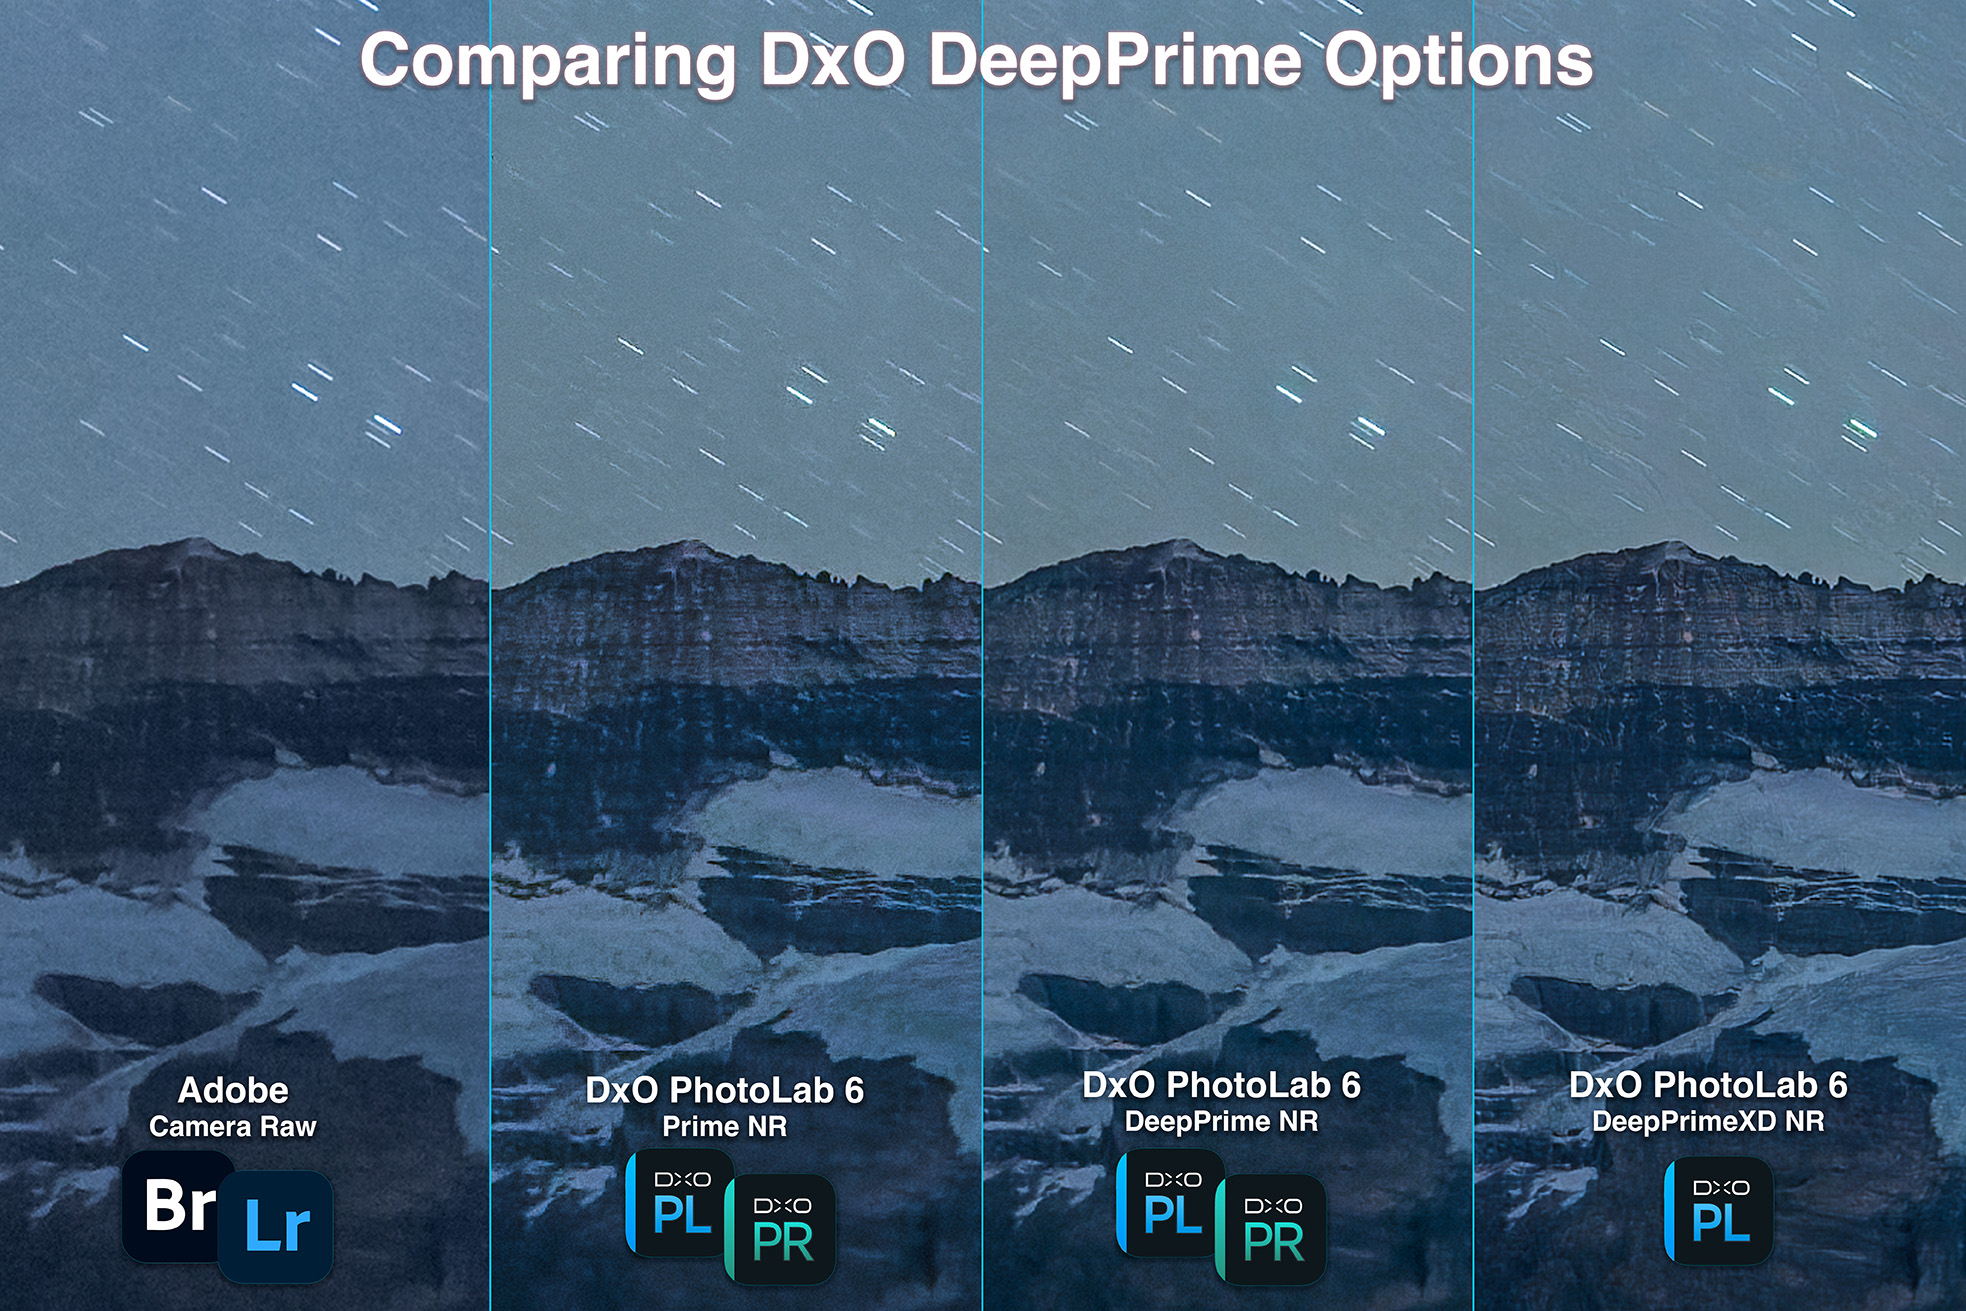 dxo deep prime comparisons